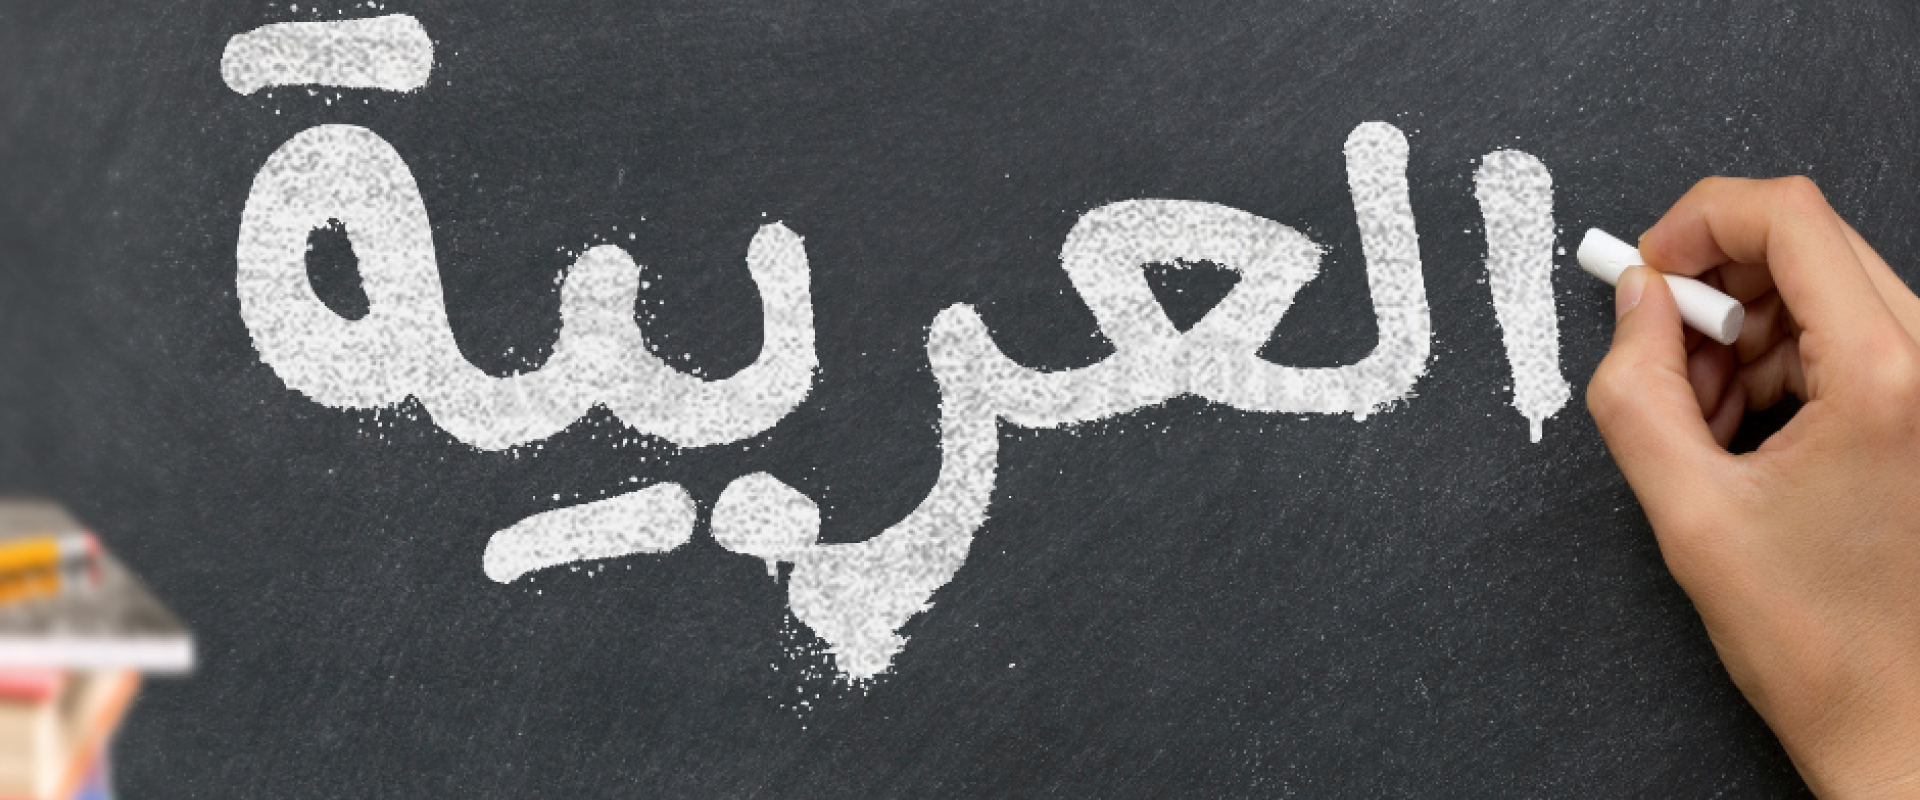 العربية خامس اللغات استخداما في الولايات المتحدة 